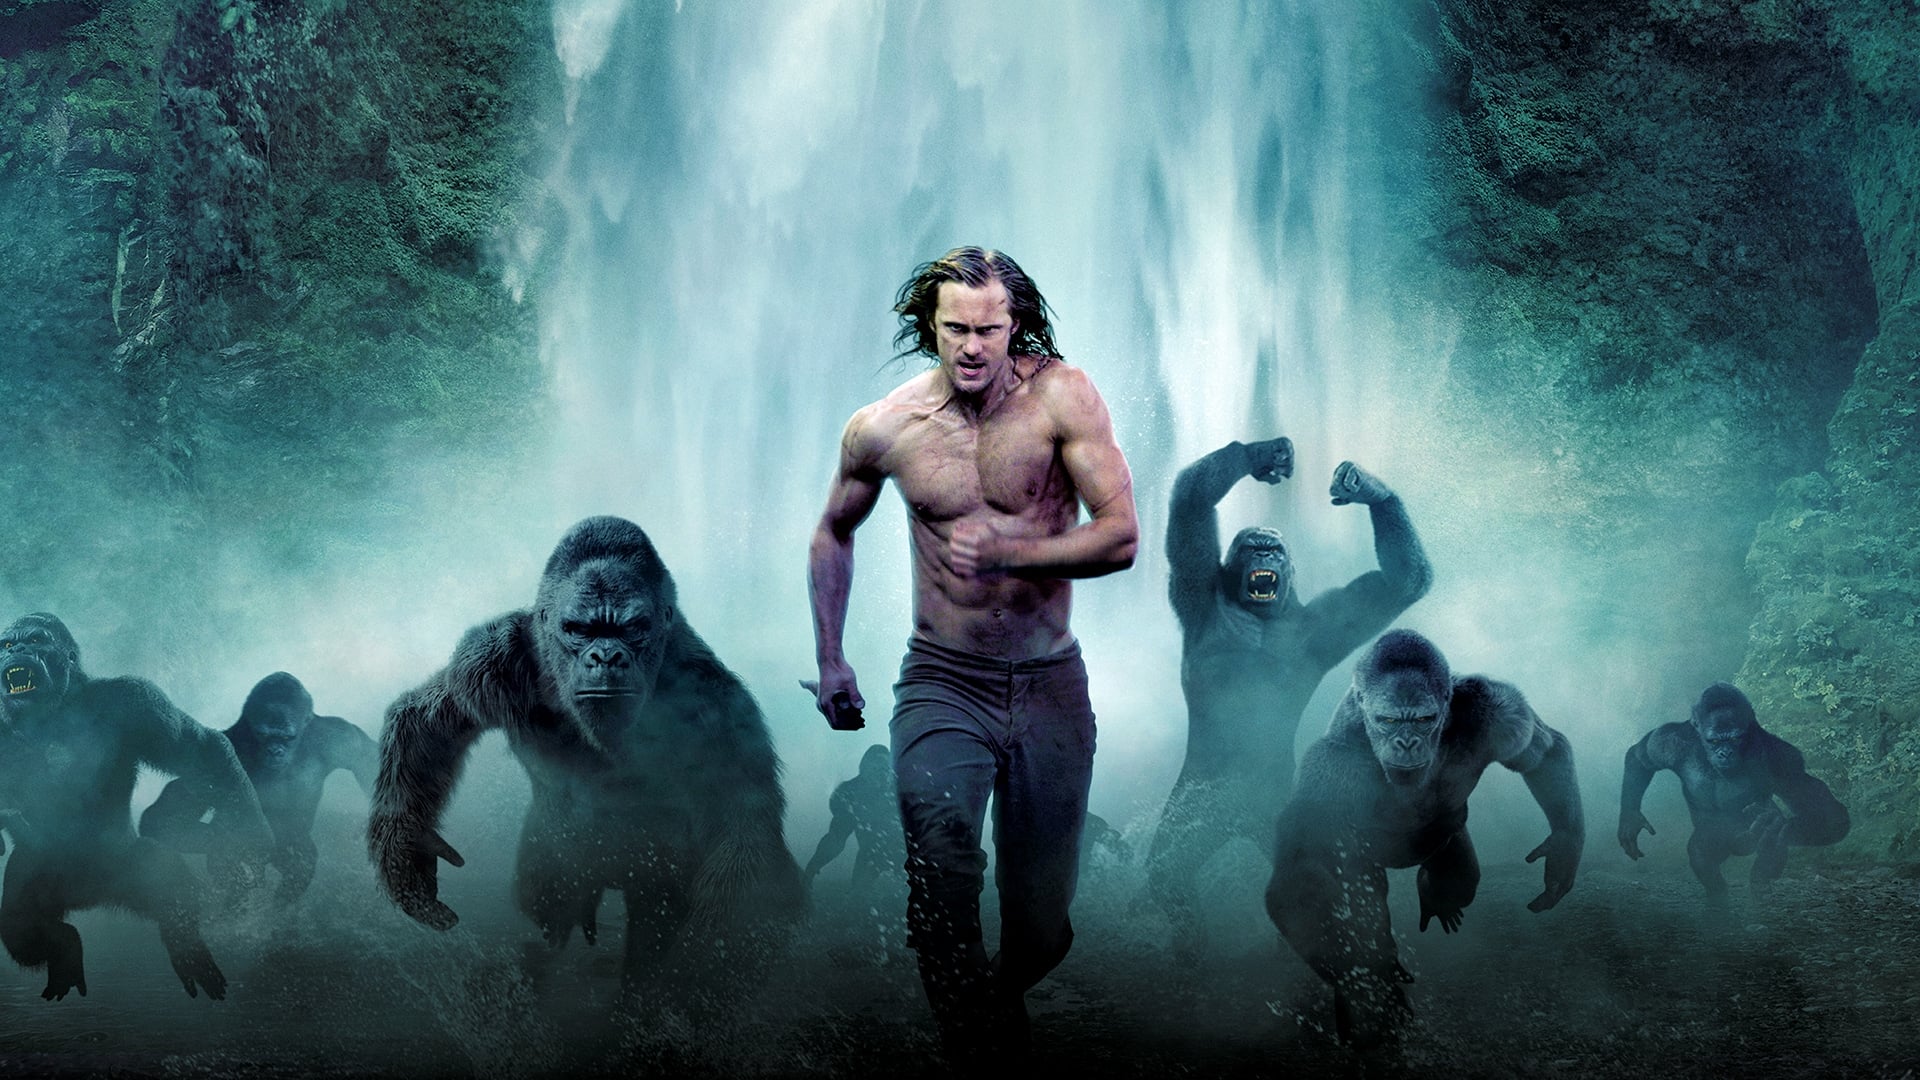 Image du film Tarzan izbvccup7njbmmzom2gwpxg7jyxjpg